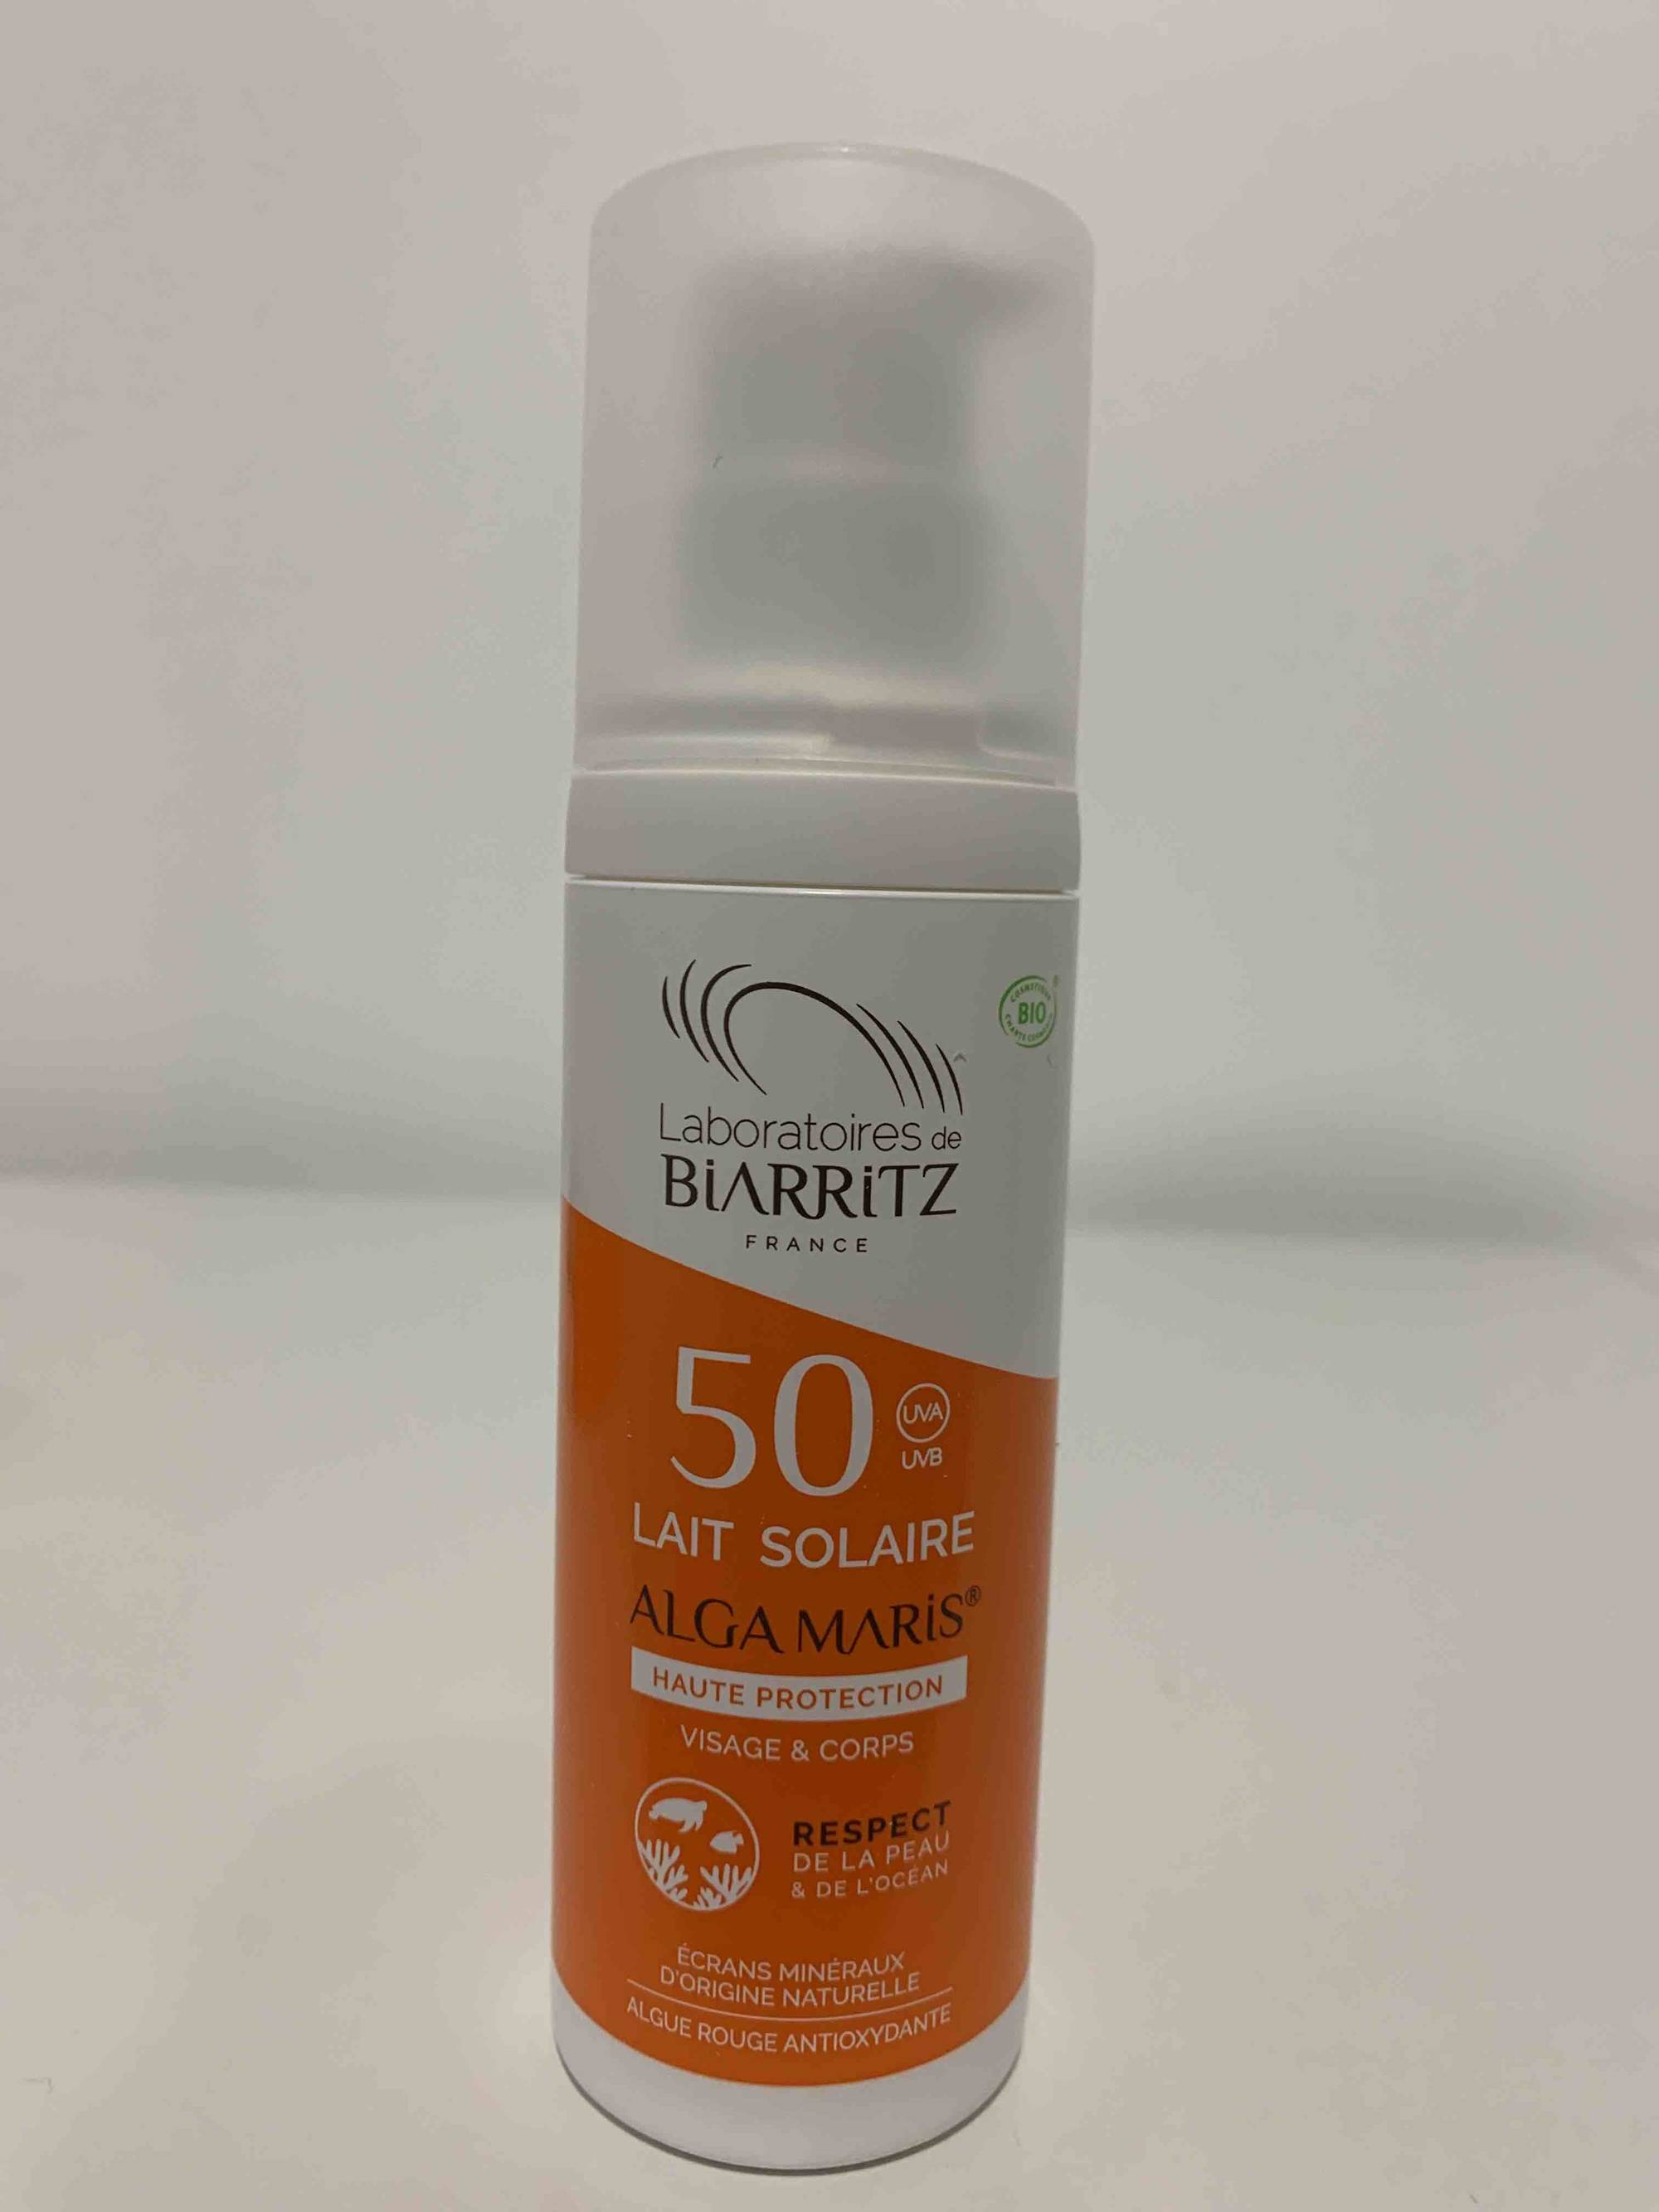 LABORATOIRES DE BIARRITZ - ALGA MARIS - Lait solaire SPF 50 haute protection